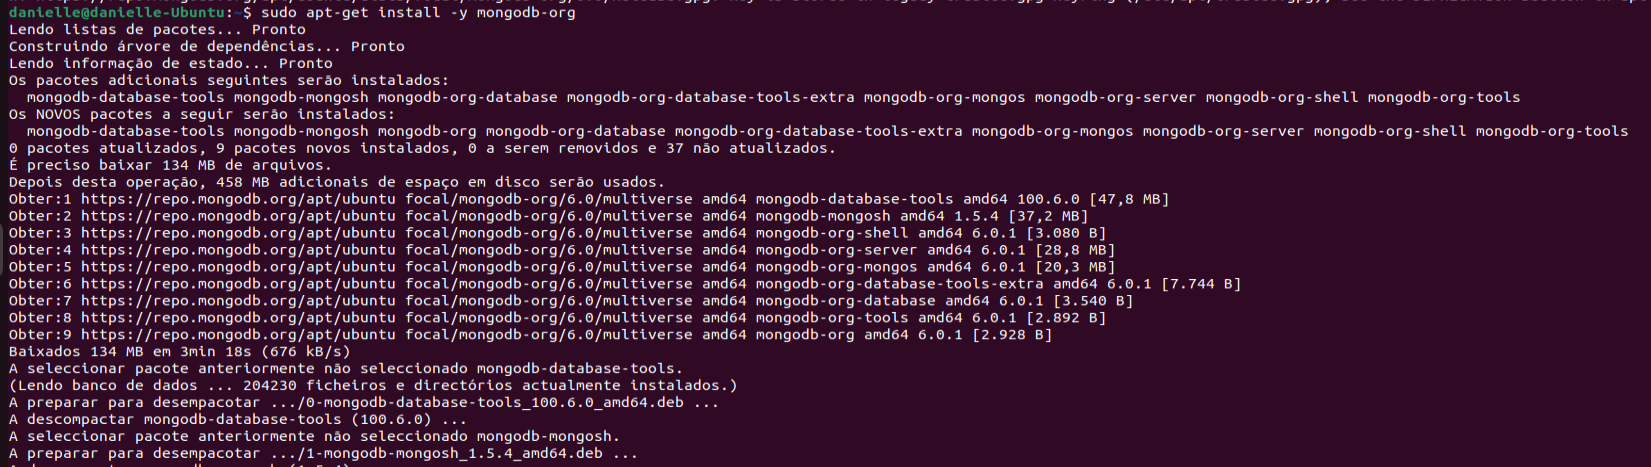 Terminal do Linux, onde foi utilizado o comando sudo apt-get install -y mongodb-org  para realizar a instalação do MongoDB.